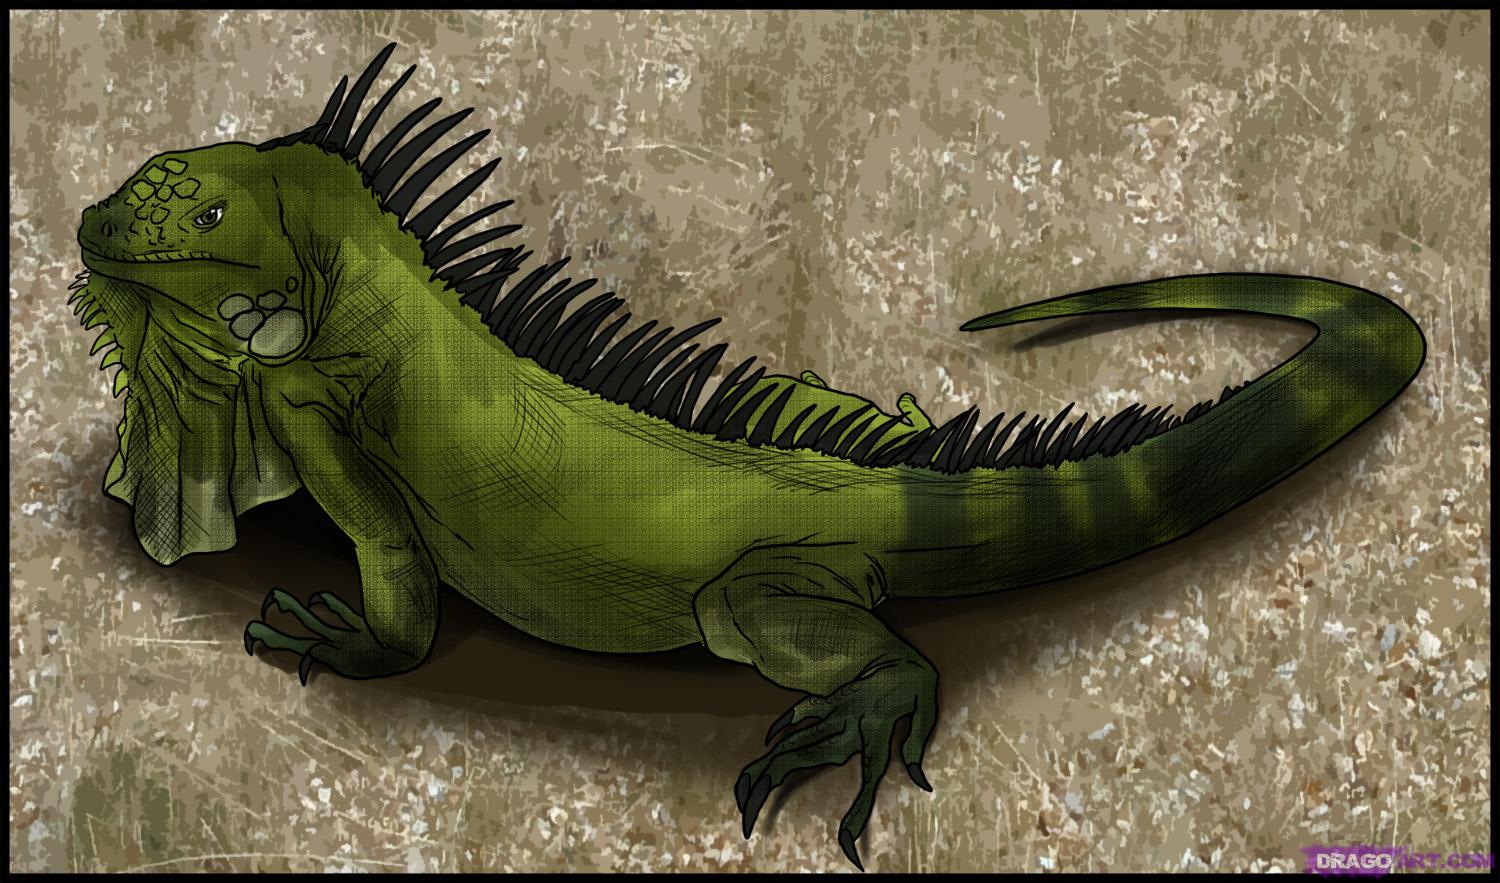 iguana green peru